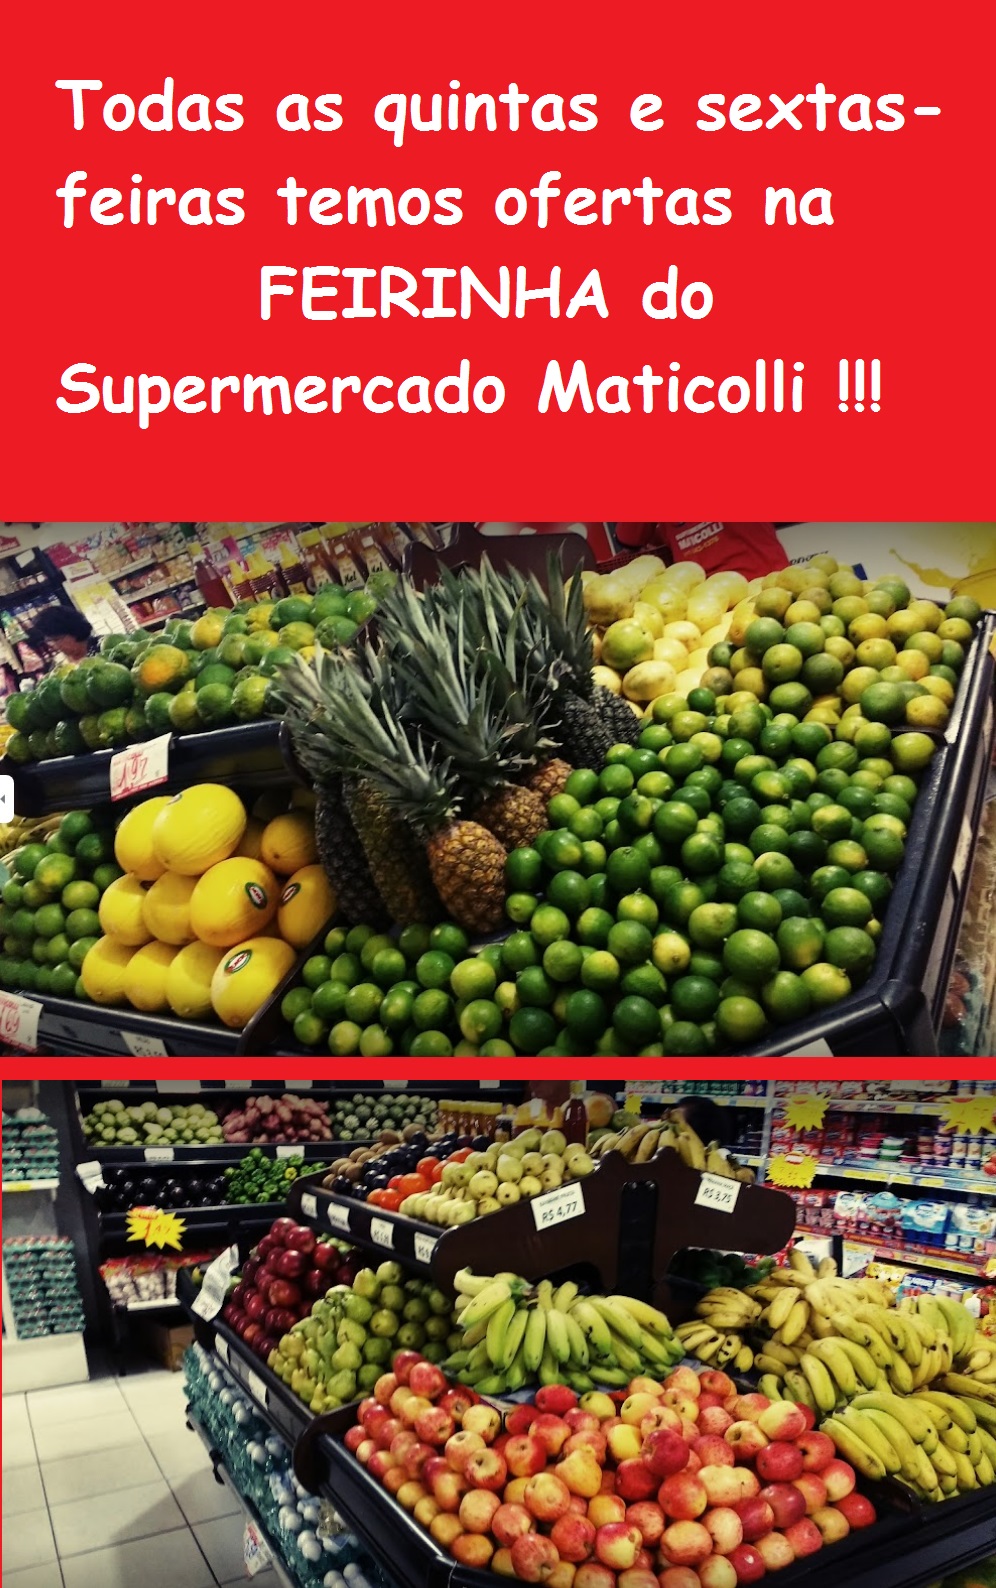 Supermercado Maticolli